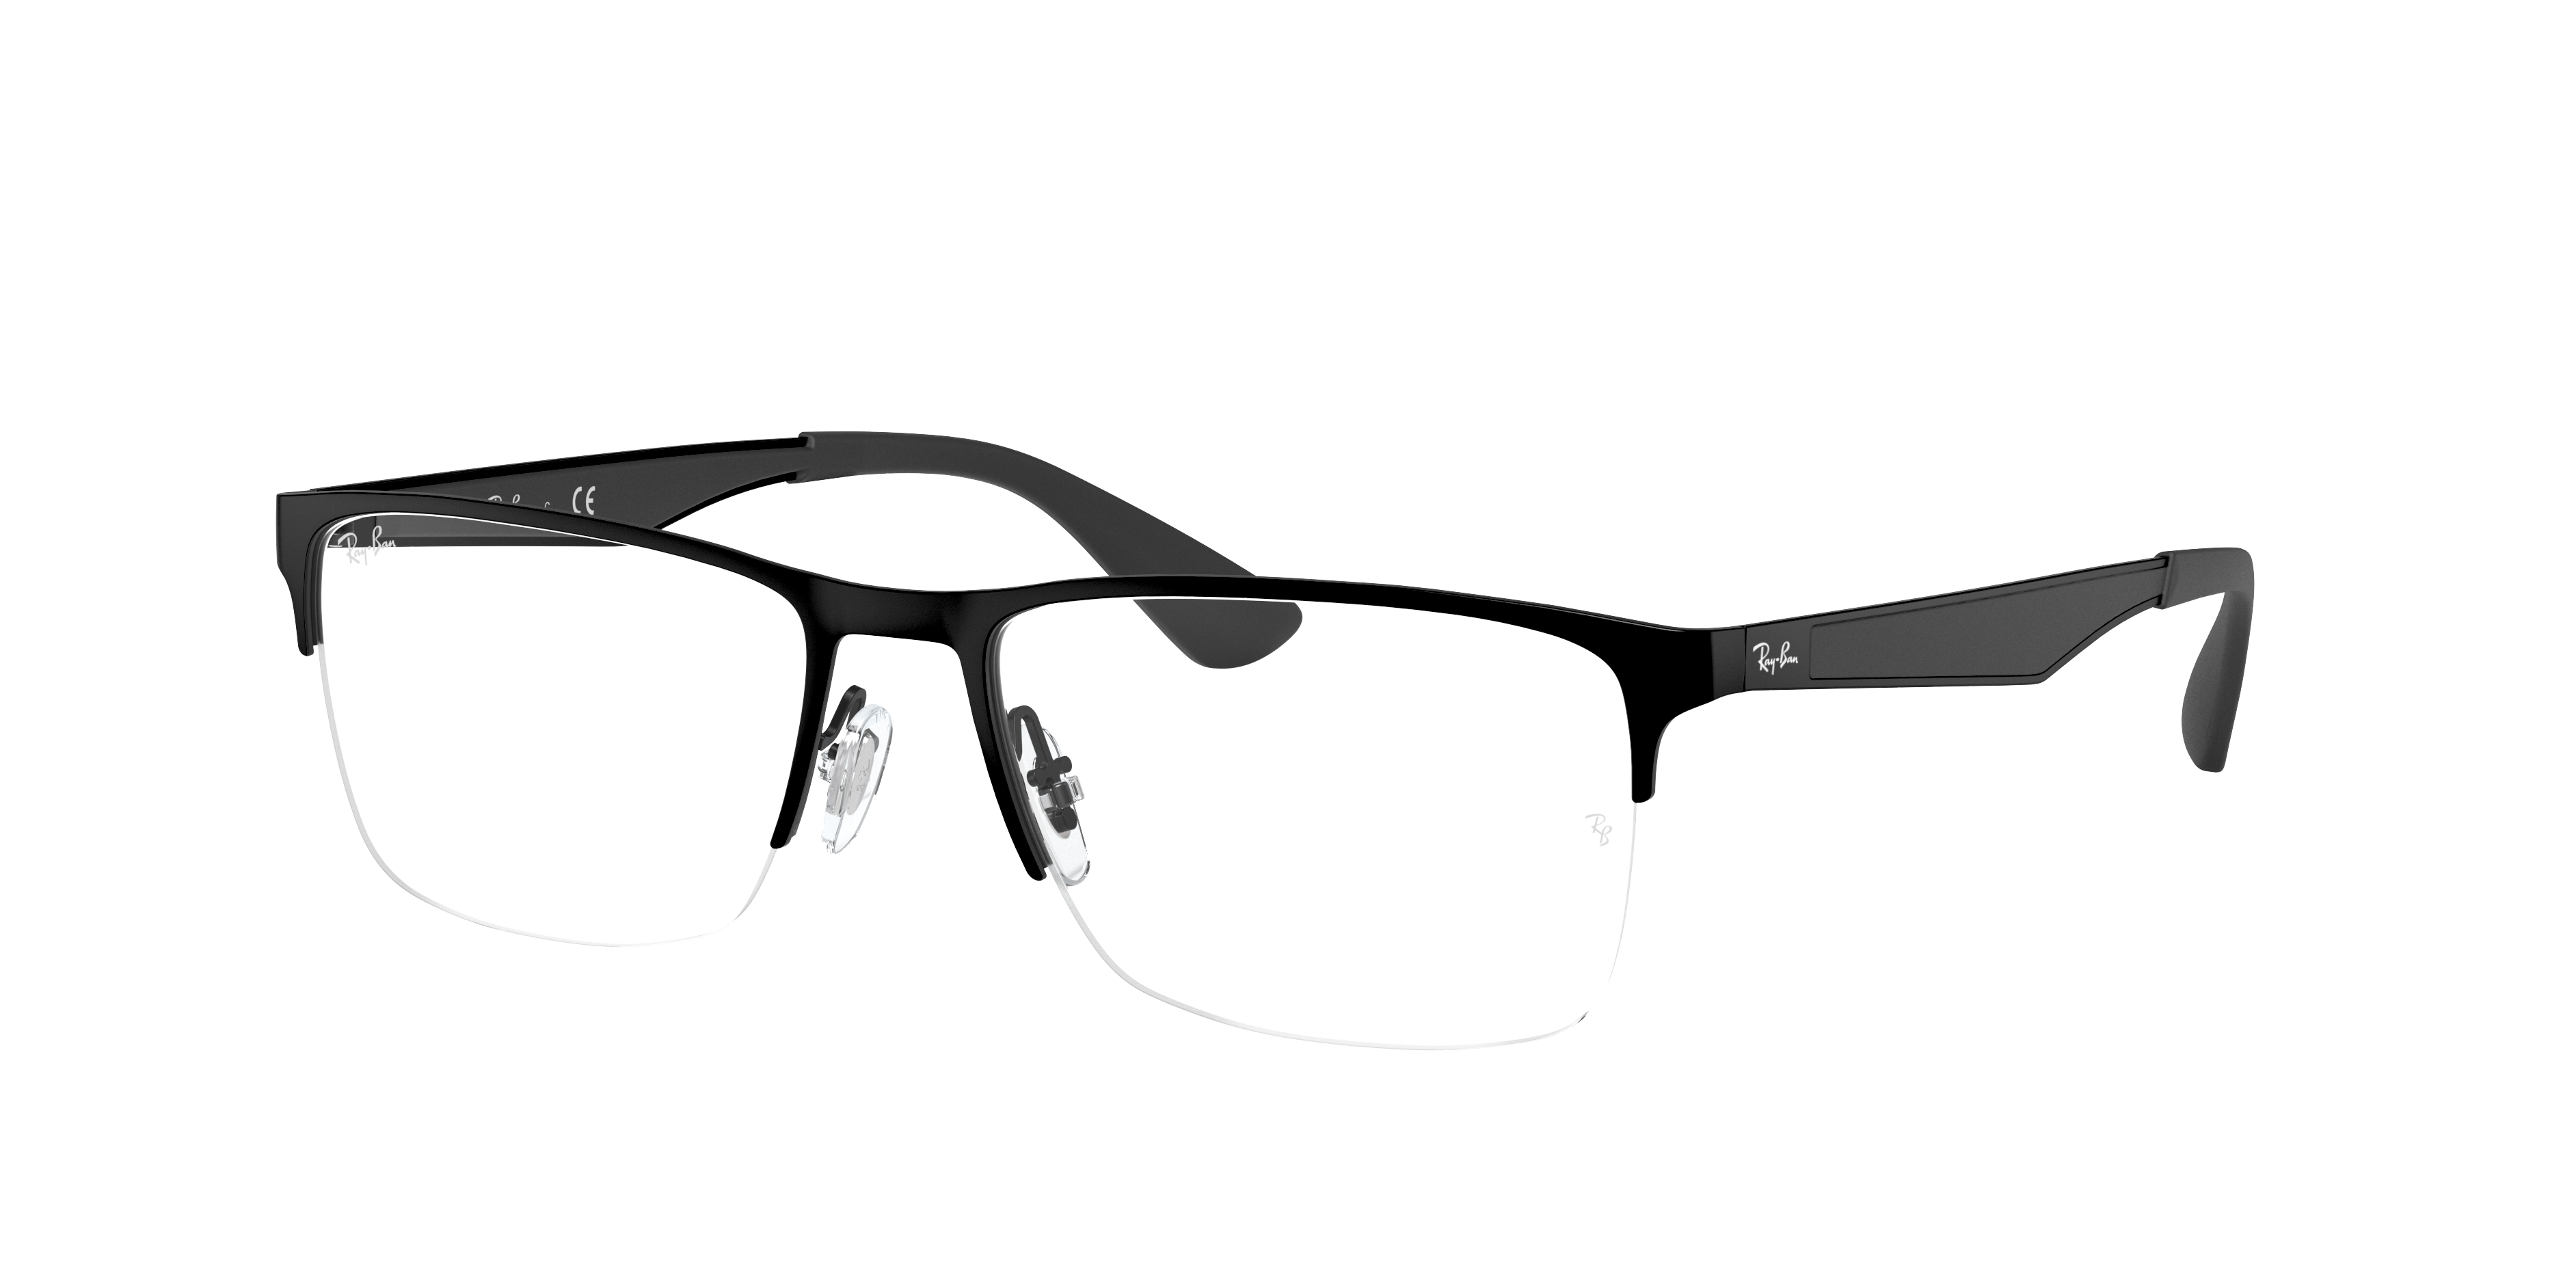 ray ban prescription sunglasses